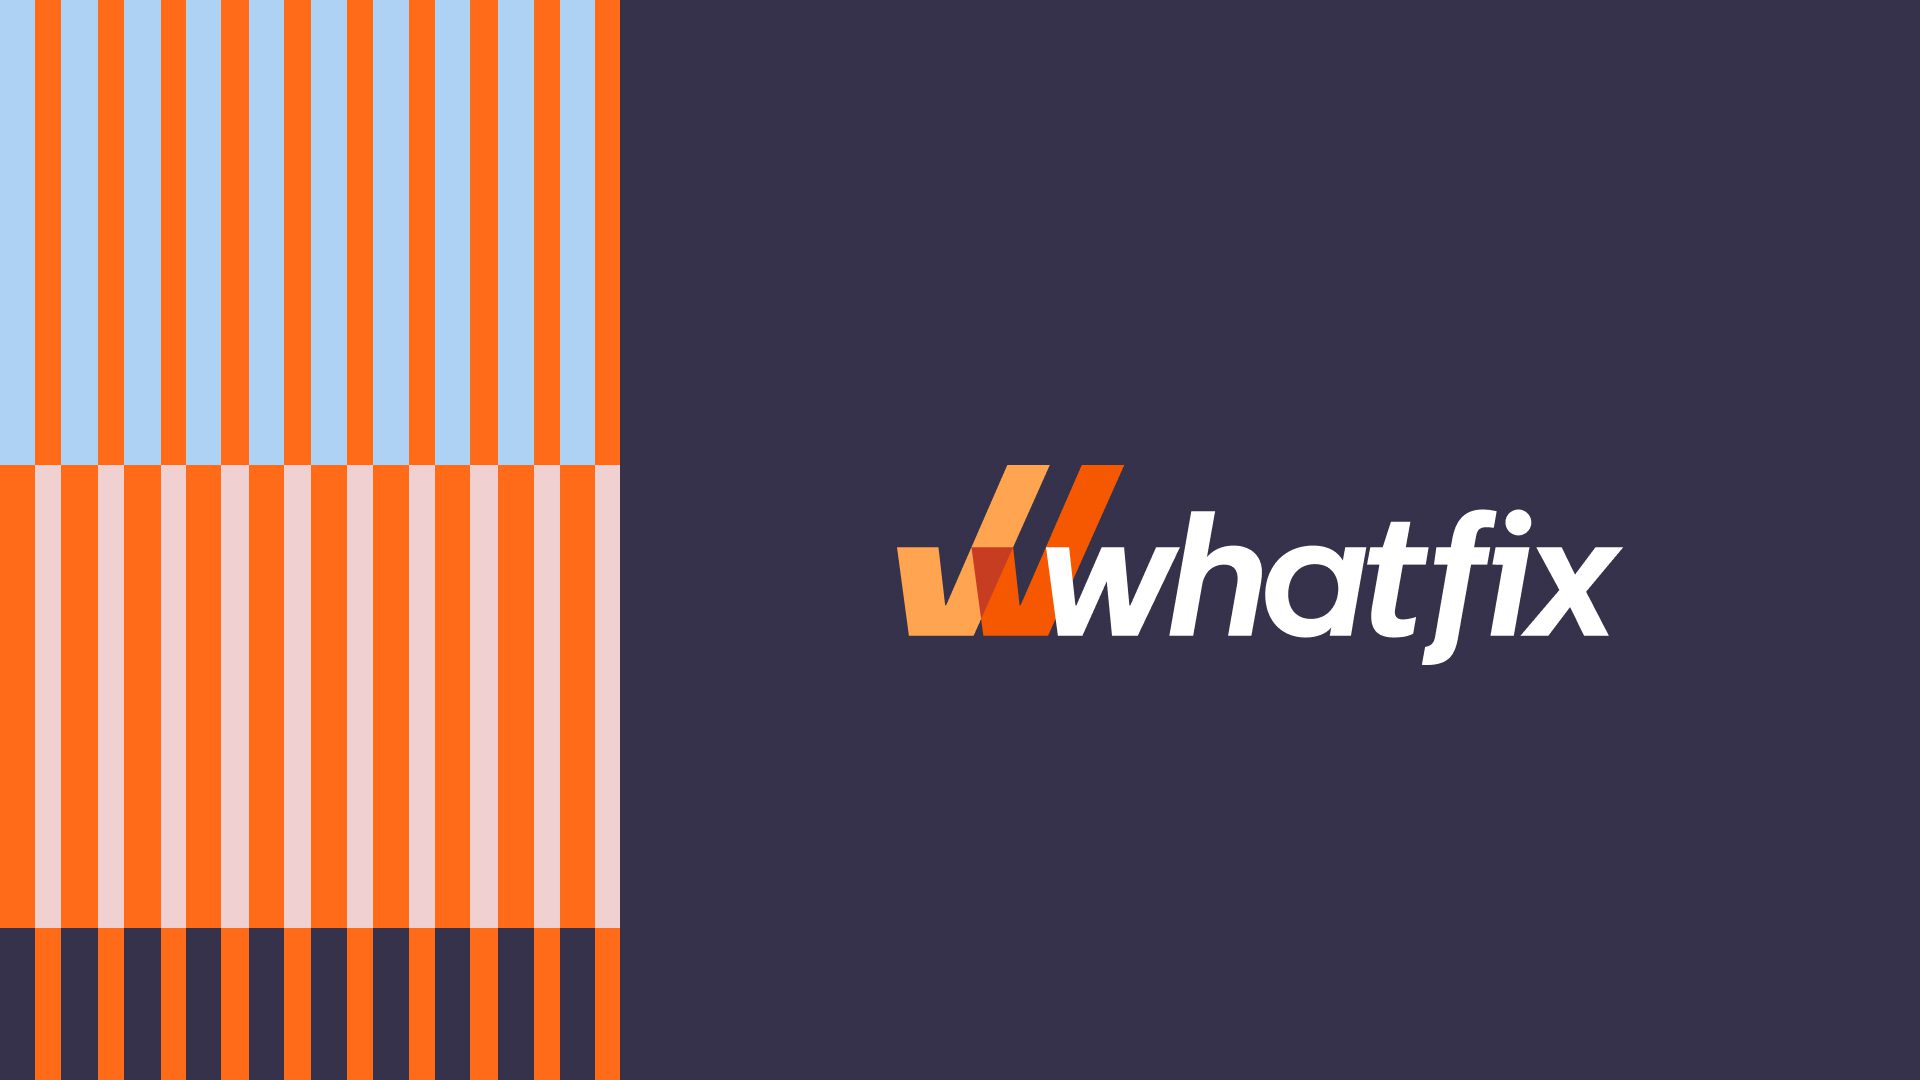 whatfix-rebrand-blog2